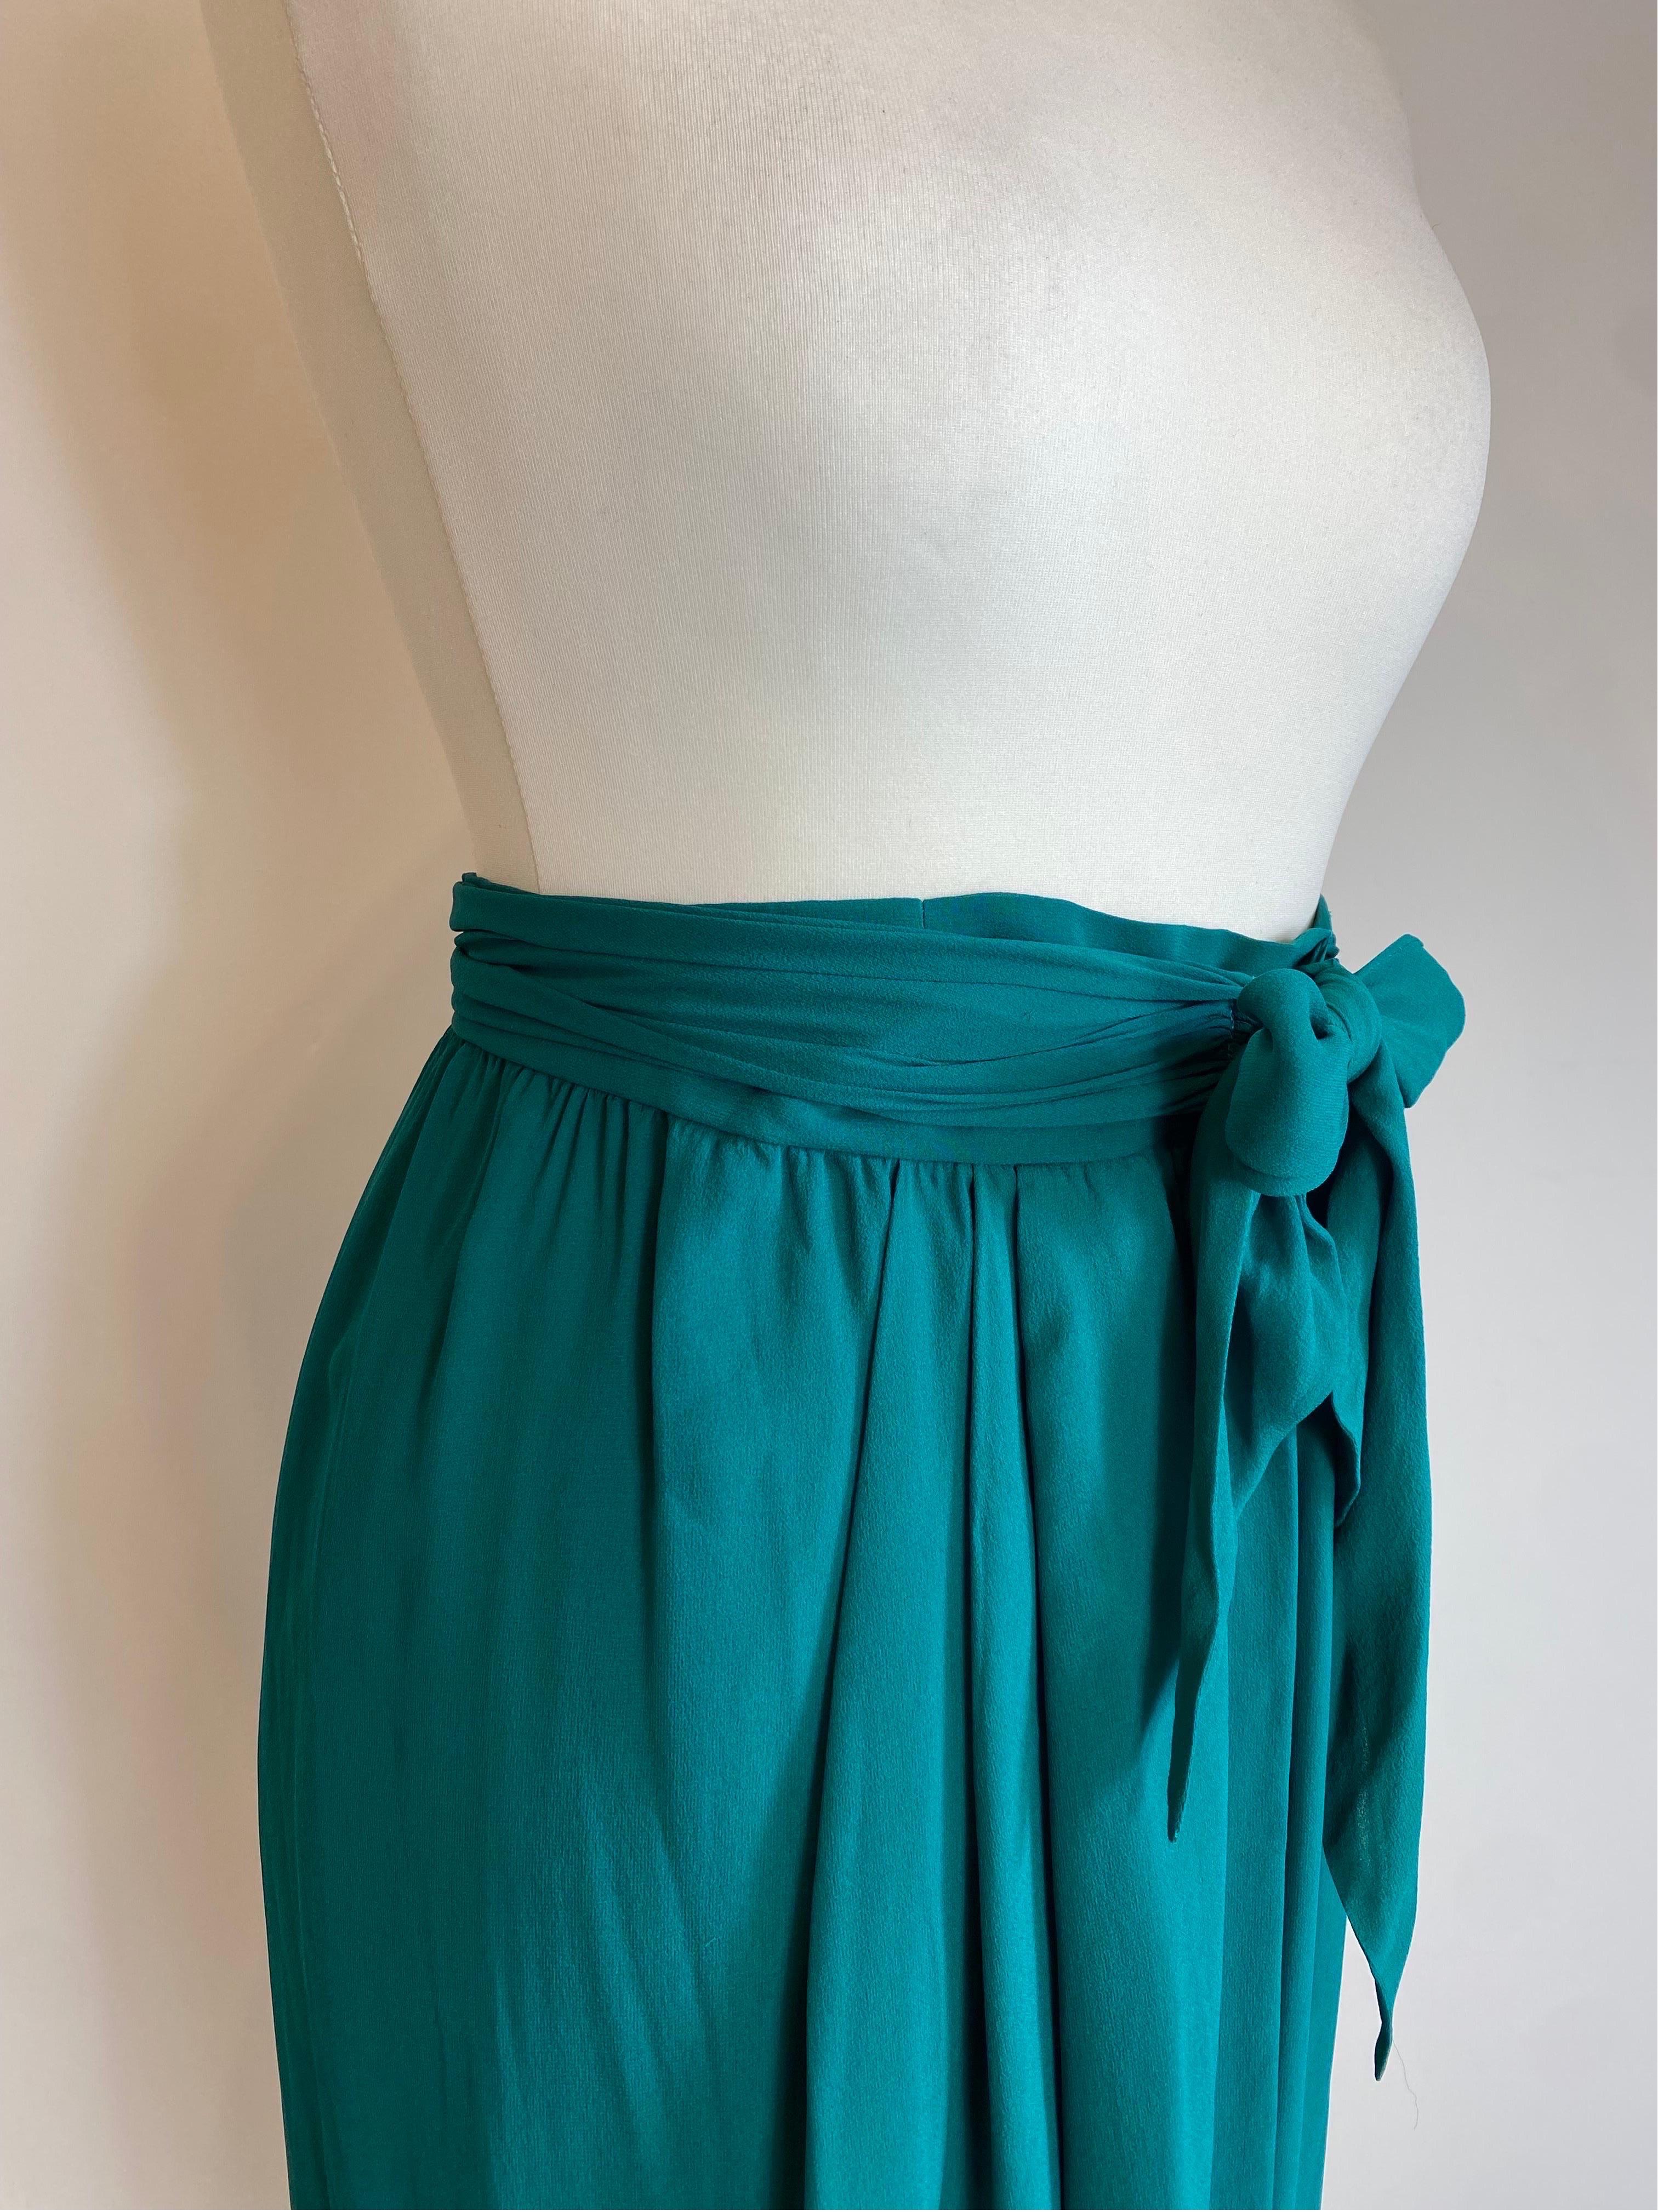 Yves Saint Laurent Vintage Emerald Green Skirt For Sale 3